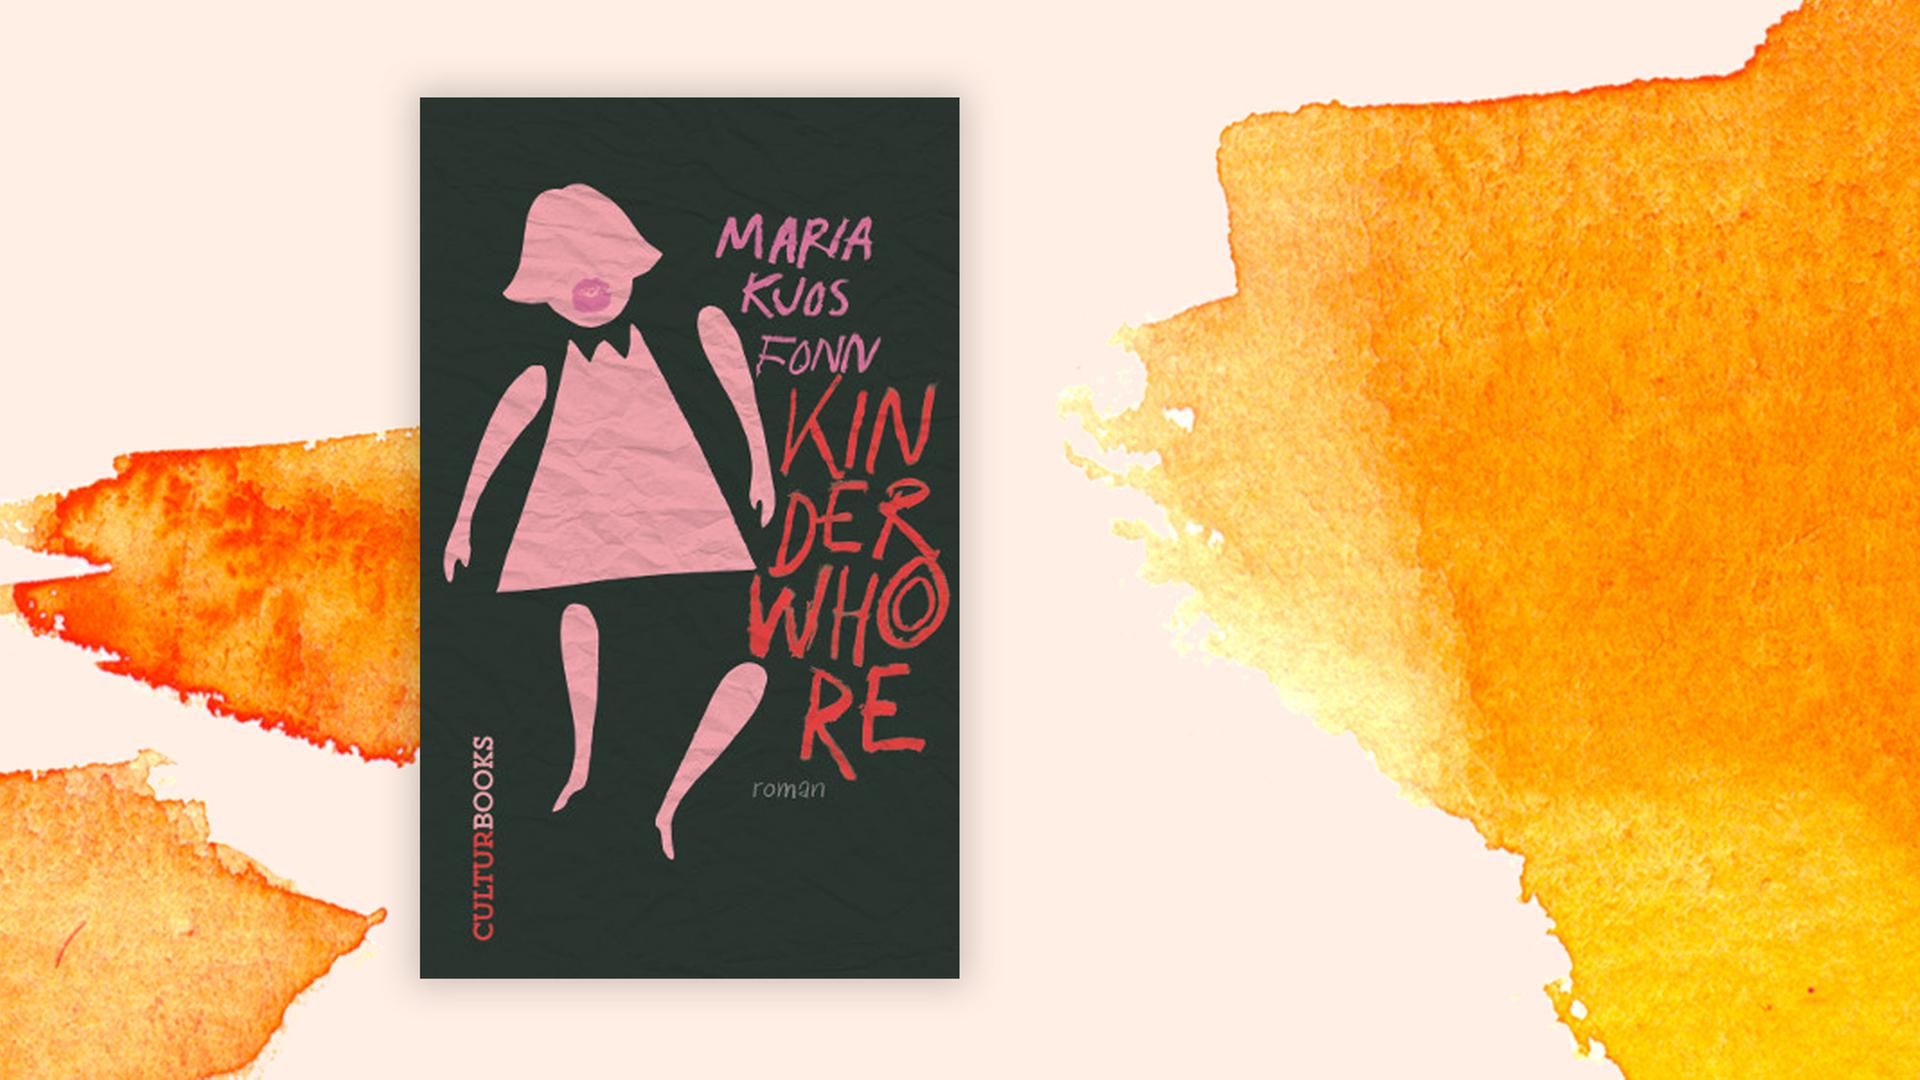 "Kinderwhore" ist der Debüt-Roman von Maria Kjos Fonn. Die norwegische Autorin lebt als Journalistin in Oslo.